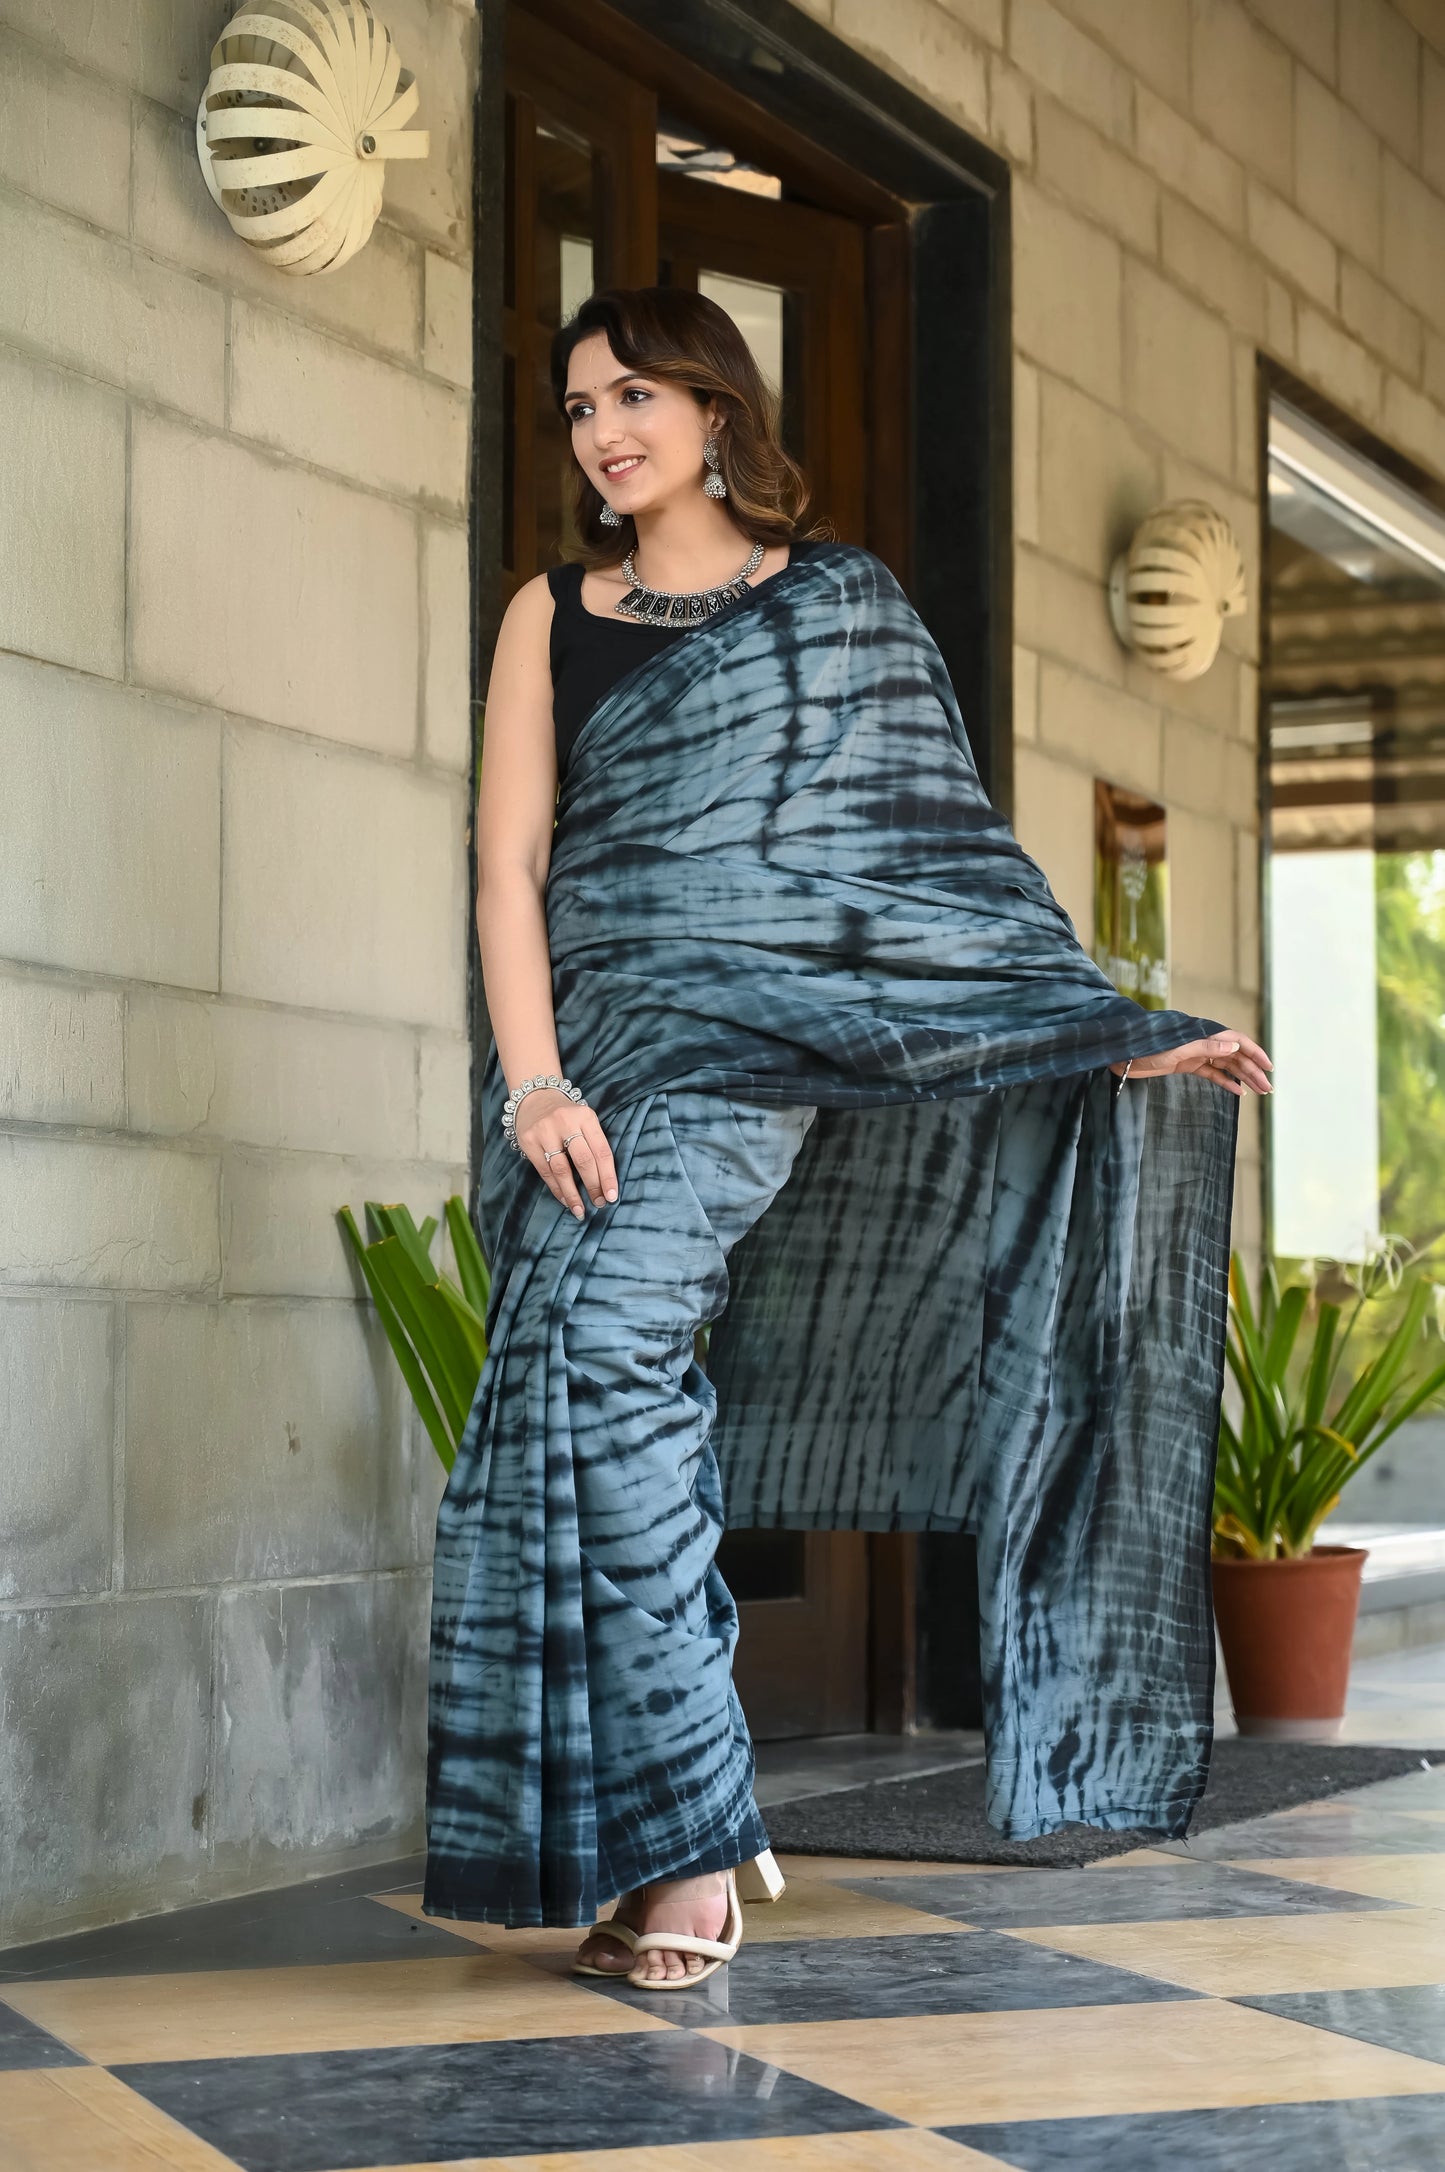 Grey and black color tie die print pure cotton saree